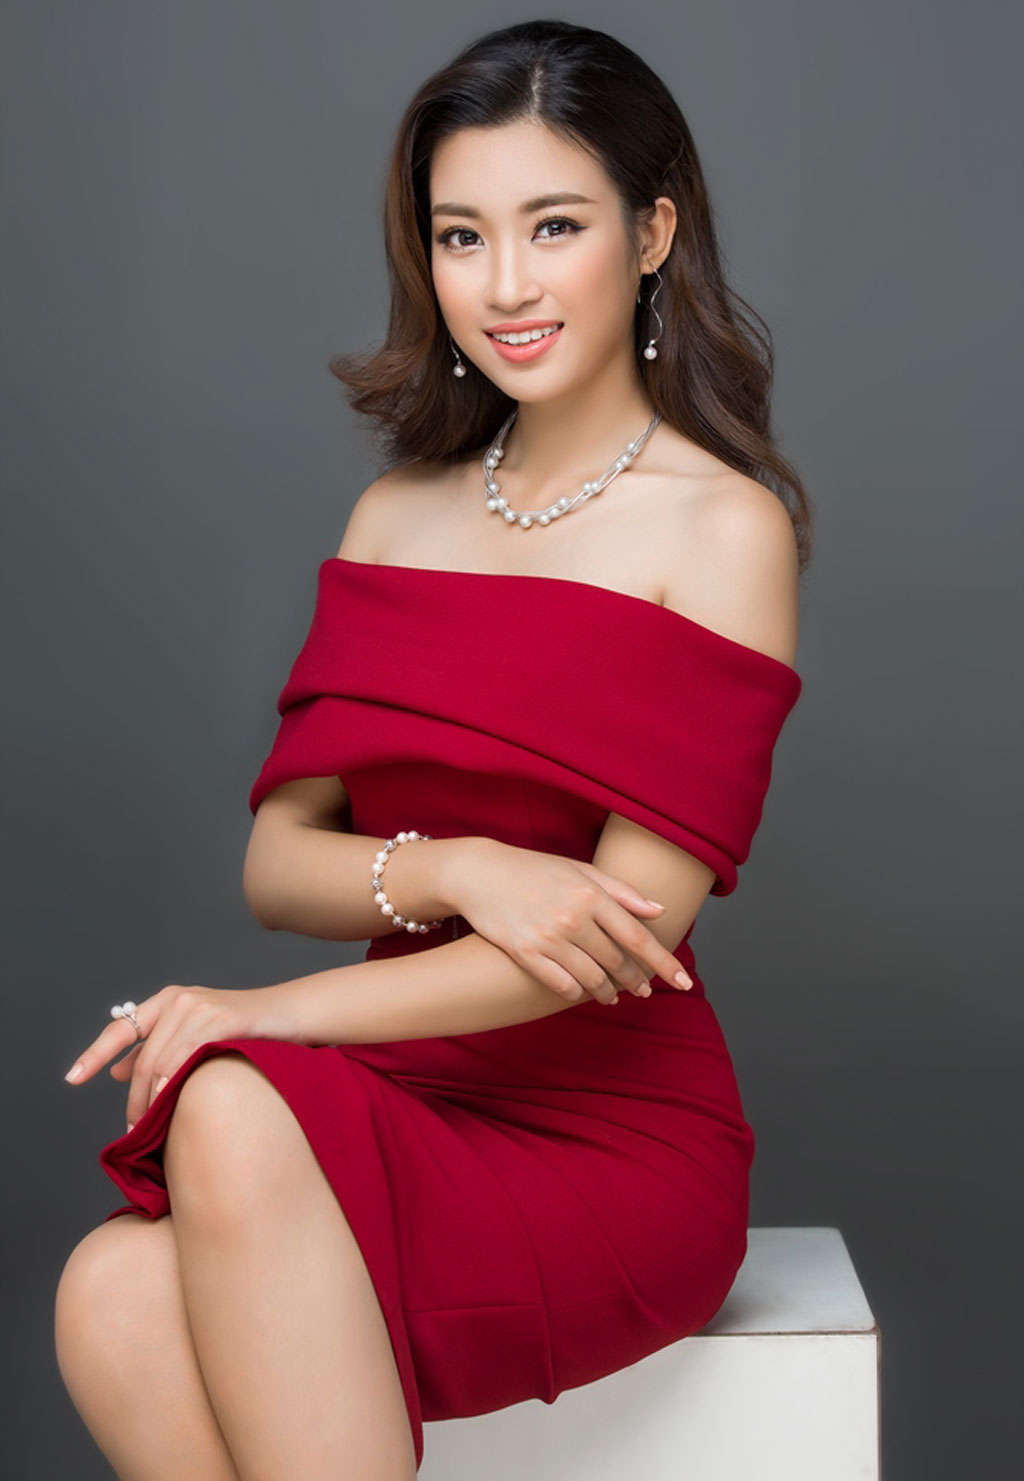 Hoa hậu Đỗ Mỹ Linh: Tôi đã có một thanh xuân rực rỡ2